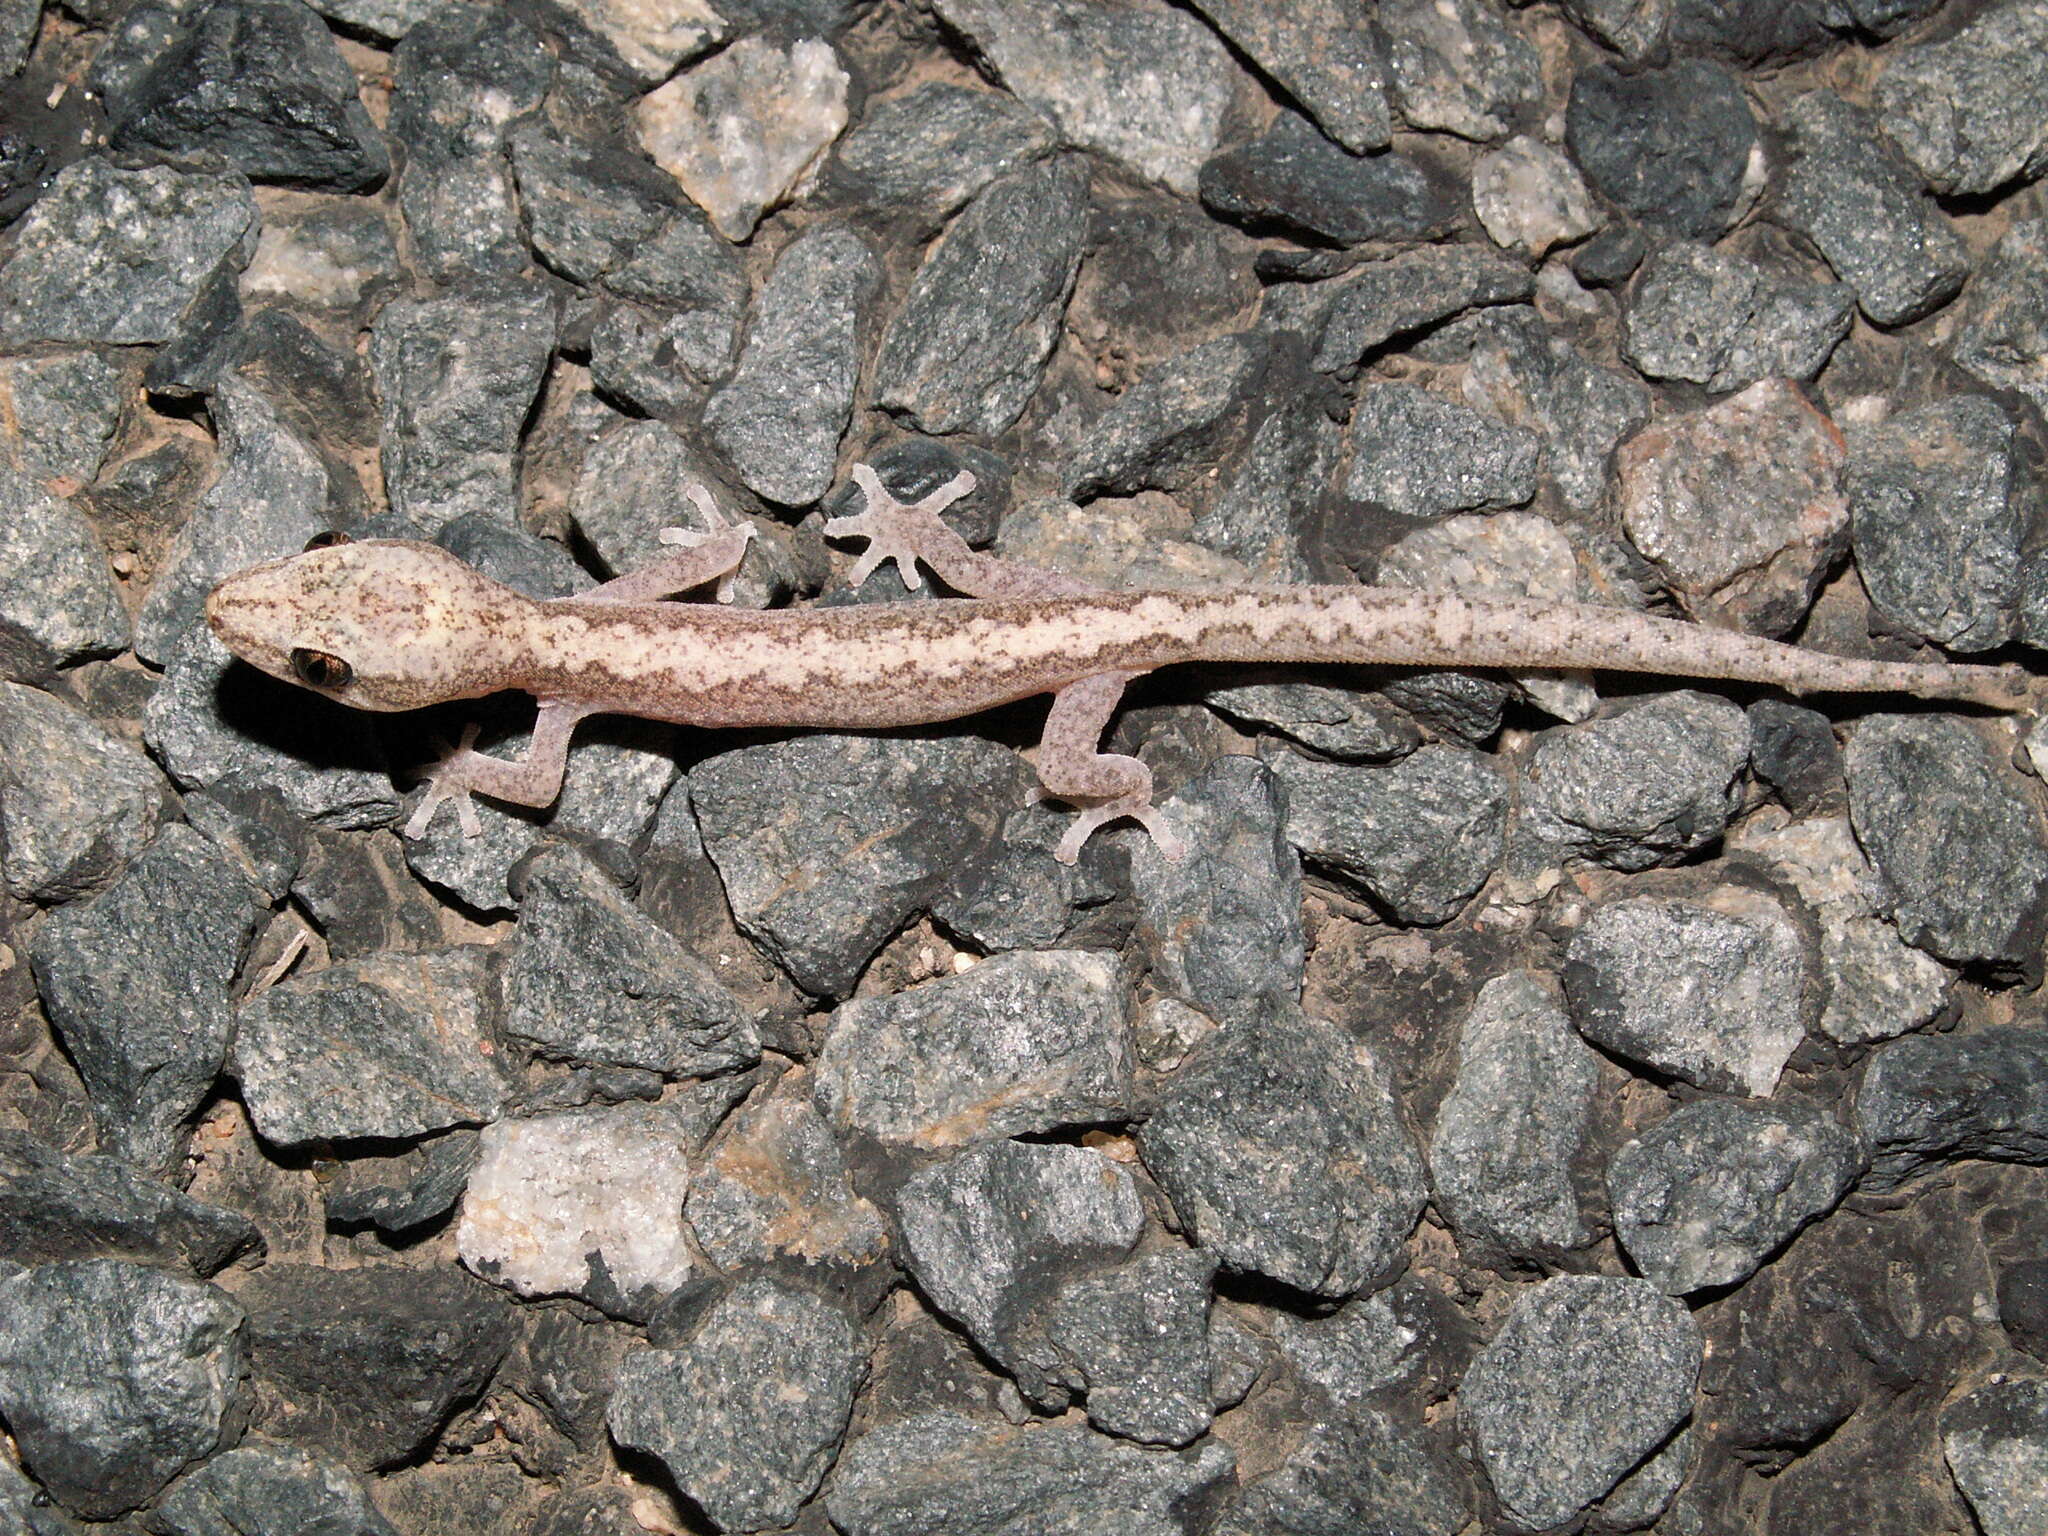 Image of Zig-zag Gecko